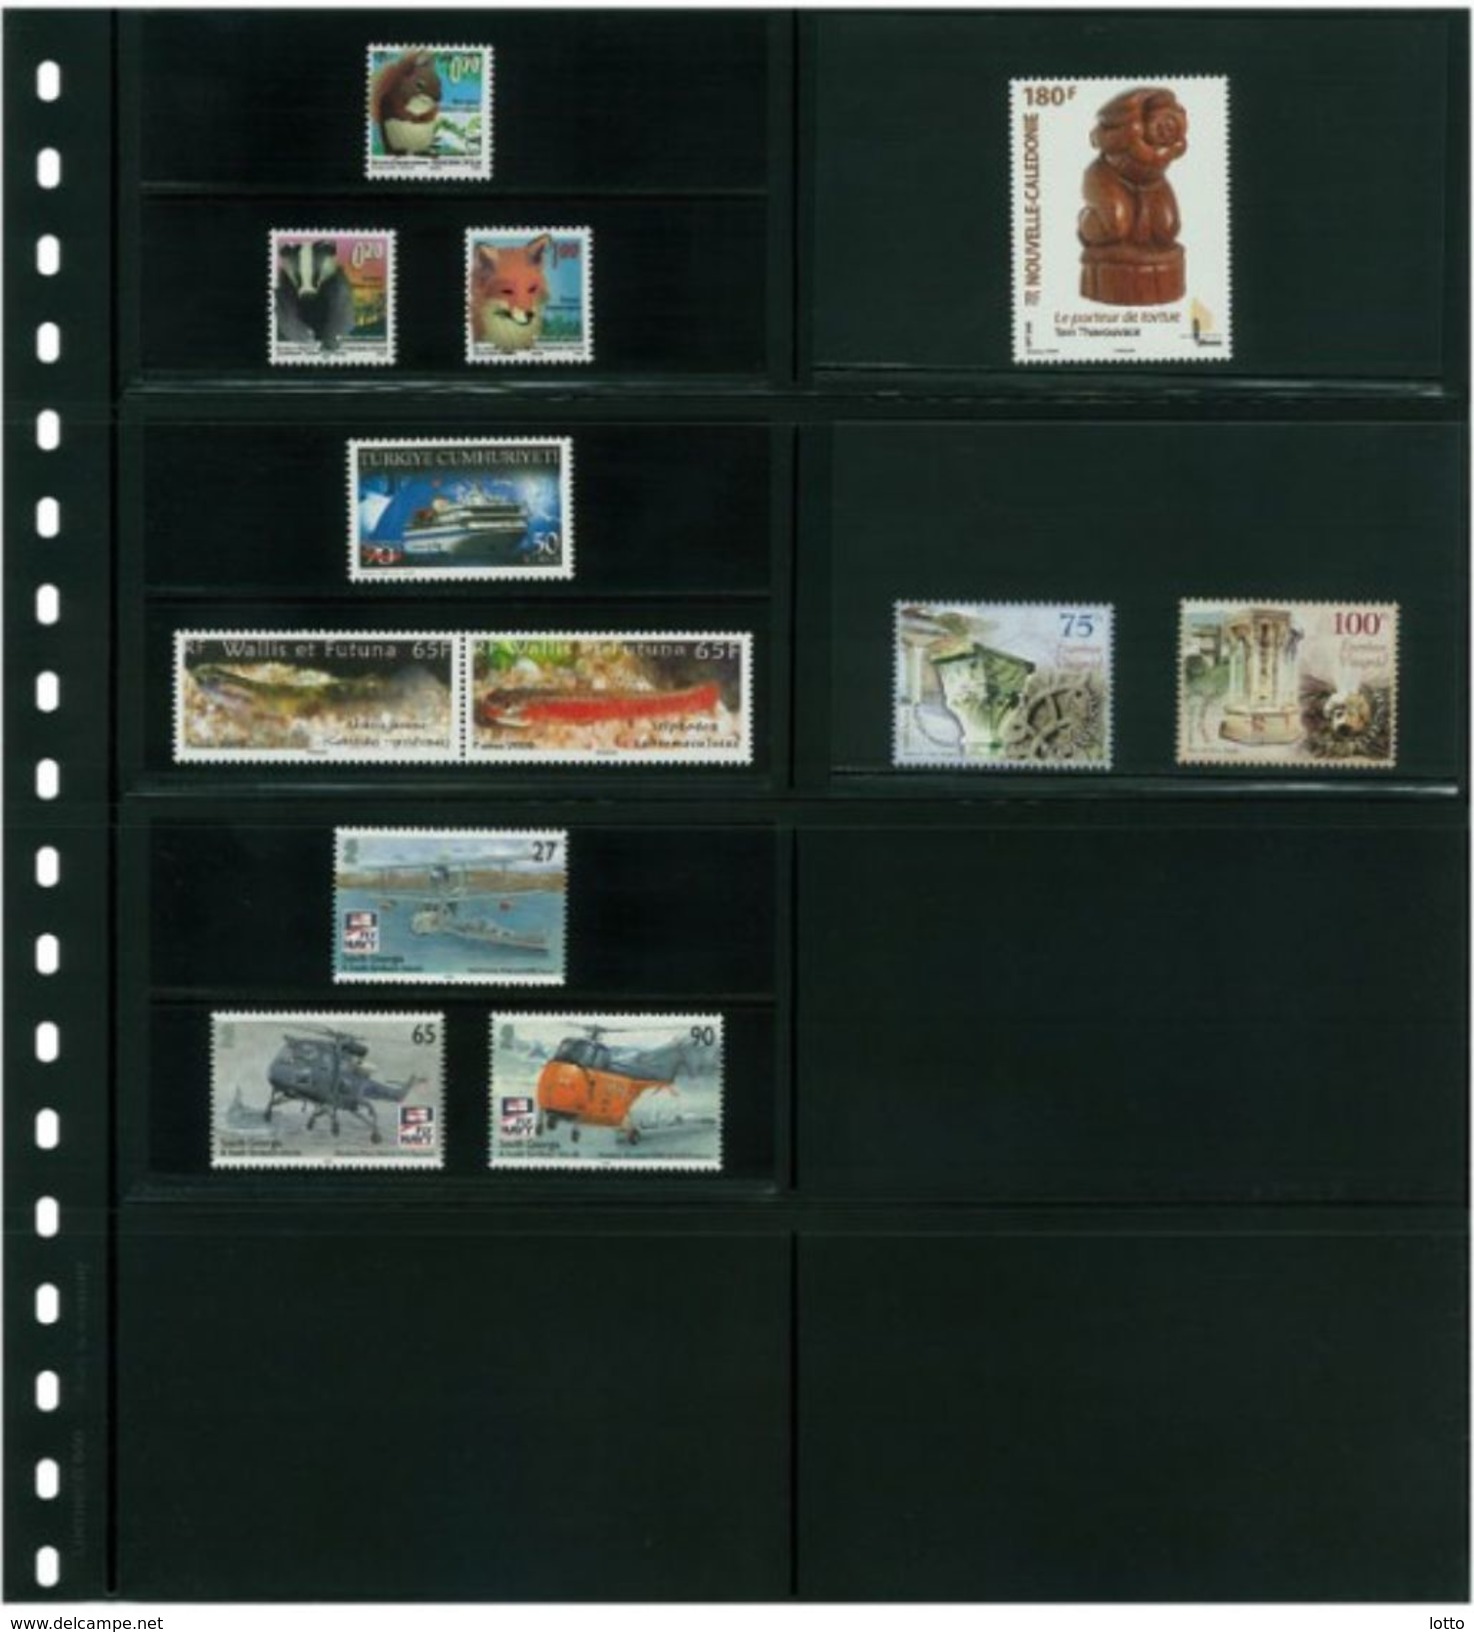 Lindner Omnia Klemmkartenblatt Mit 8 Taschen (120 X 66 Mm) Pro Seite, Schwarz +++ NEU OVP +++ (040) - Vierges